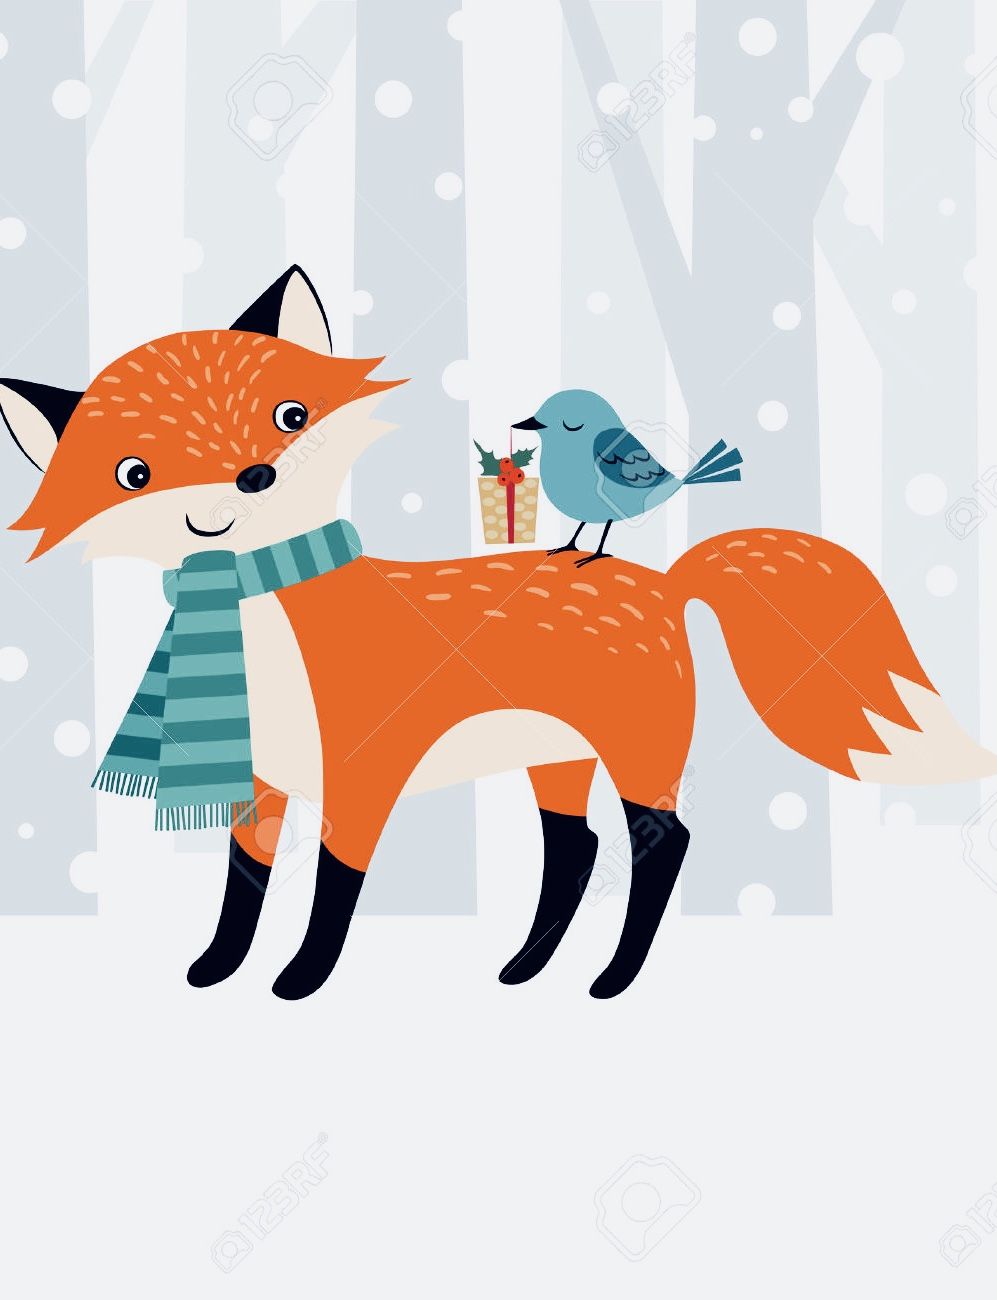 Christmas Wallpaper. Fox art, Christmas wallpaper, Children illustration